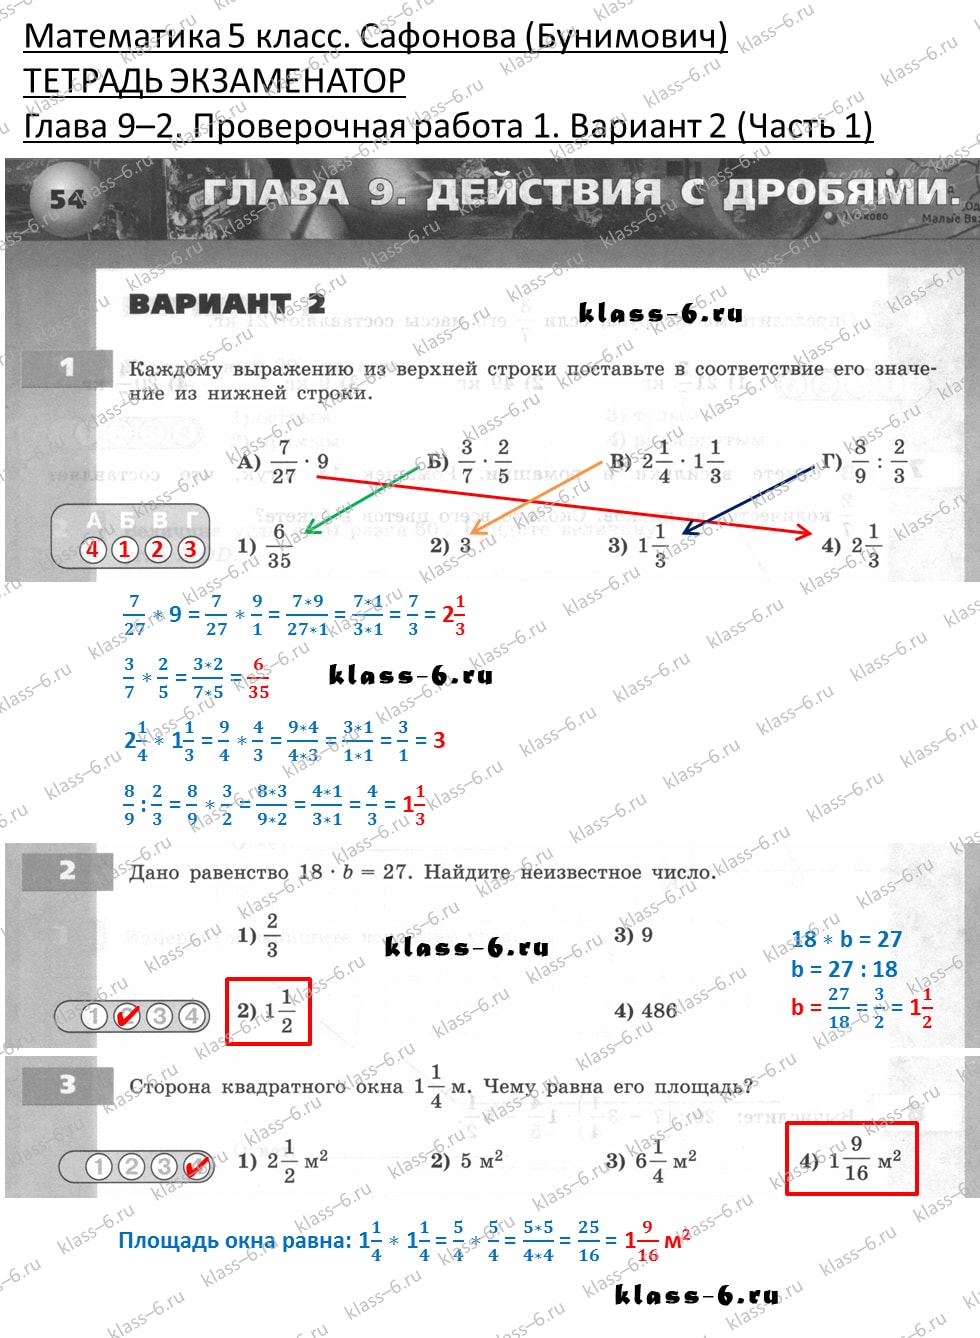 решебник и гдз по математике тетрадь экзаменатор Сафонова, Бунимович 5 класс глава 9 (2) контрольная работа 1 вариант 2 (1)